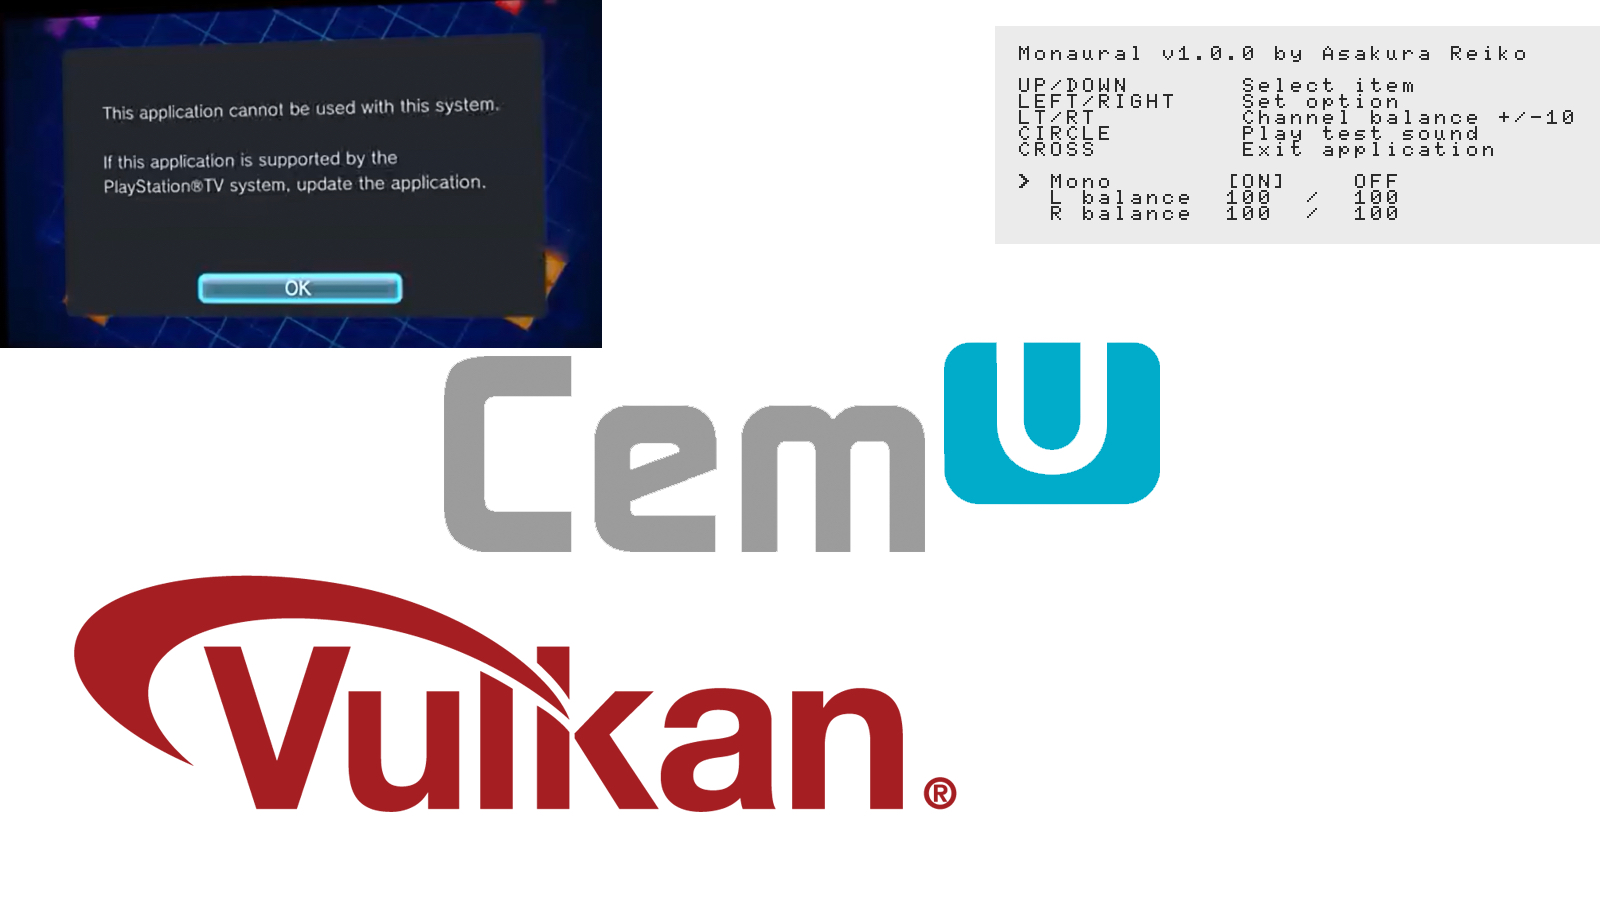 Noticias: Cemu 1.16.0c lanzado públicamente con las mejoras de la memoria caché de renderizador y sombreador de Vulkan; 2 Nuevos complementos de PSVita (DolcePolce & Monaural) lanzados por Team CBPS